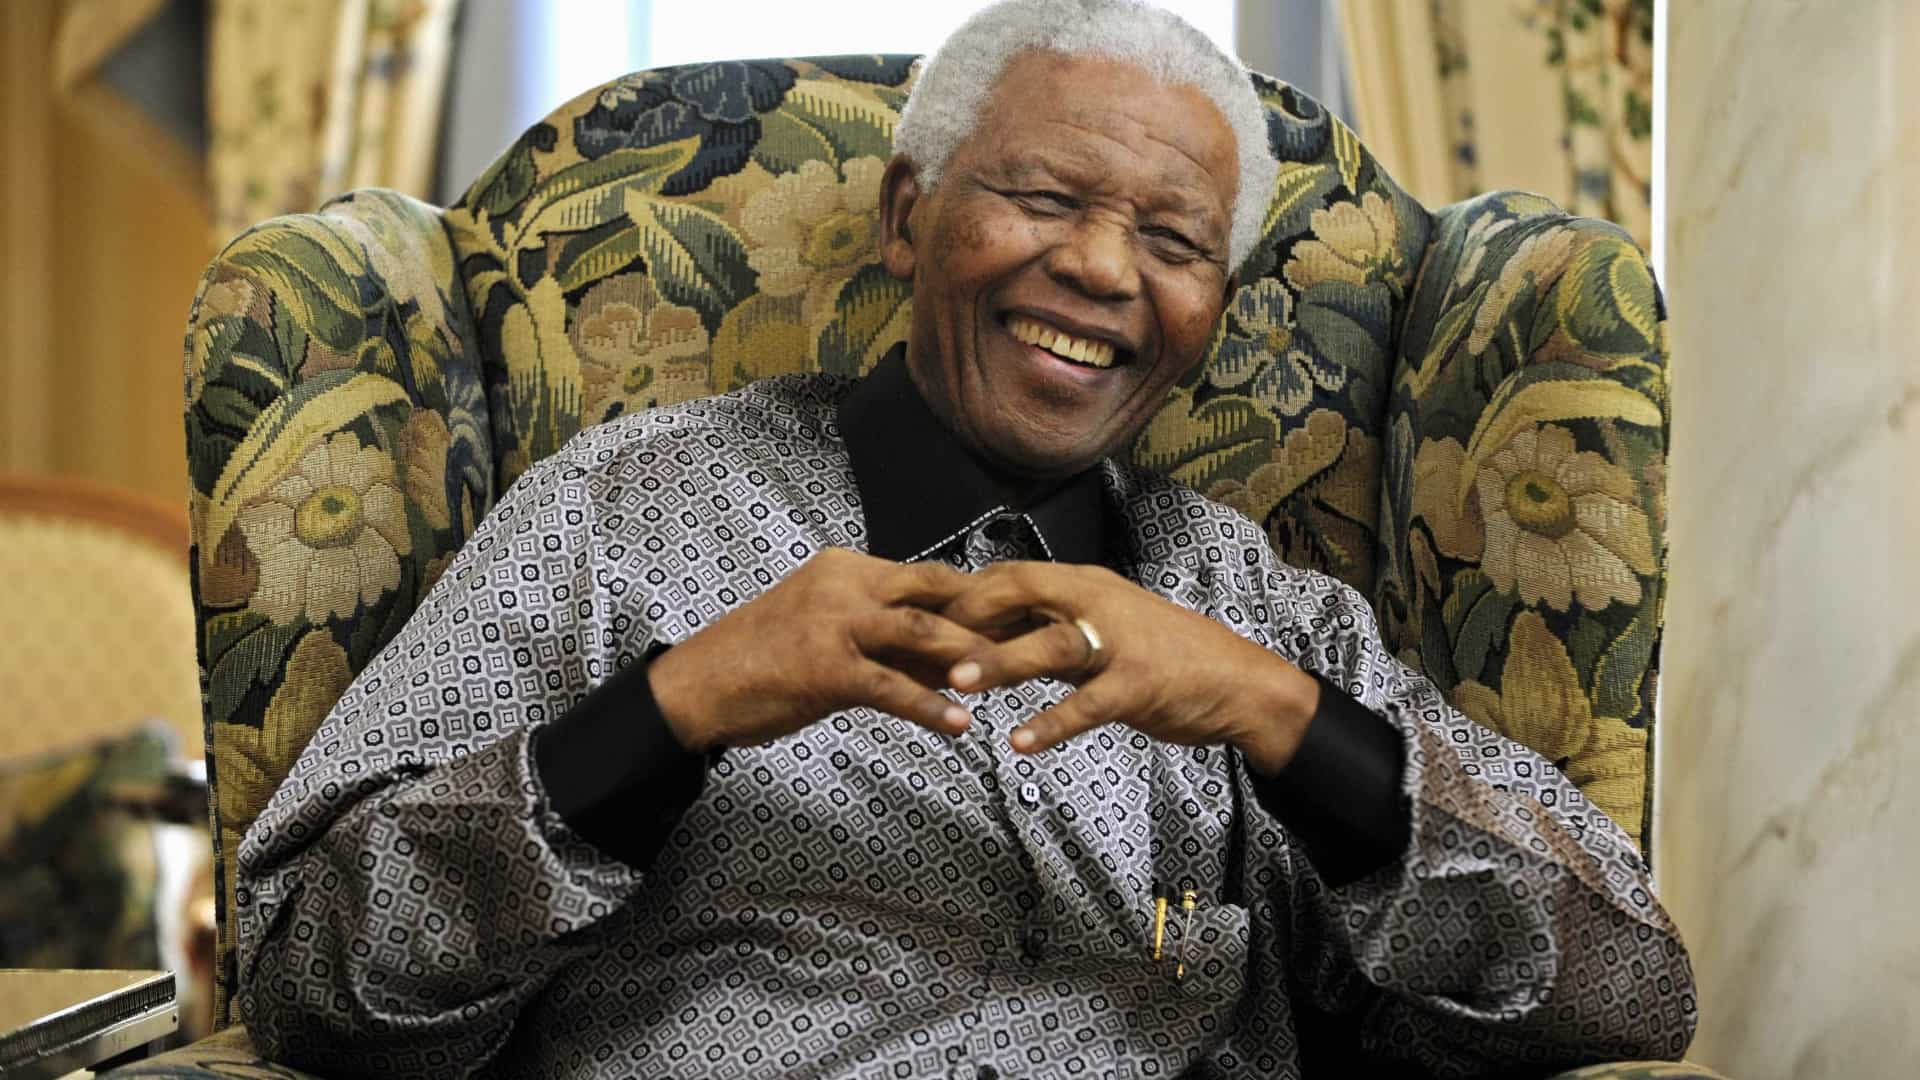 Nelson Mandela - biografia e luta contra o Apartheid